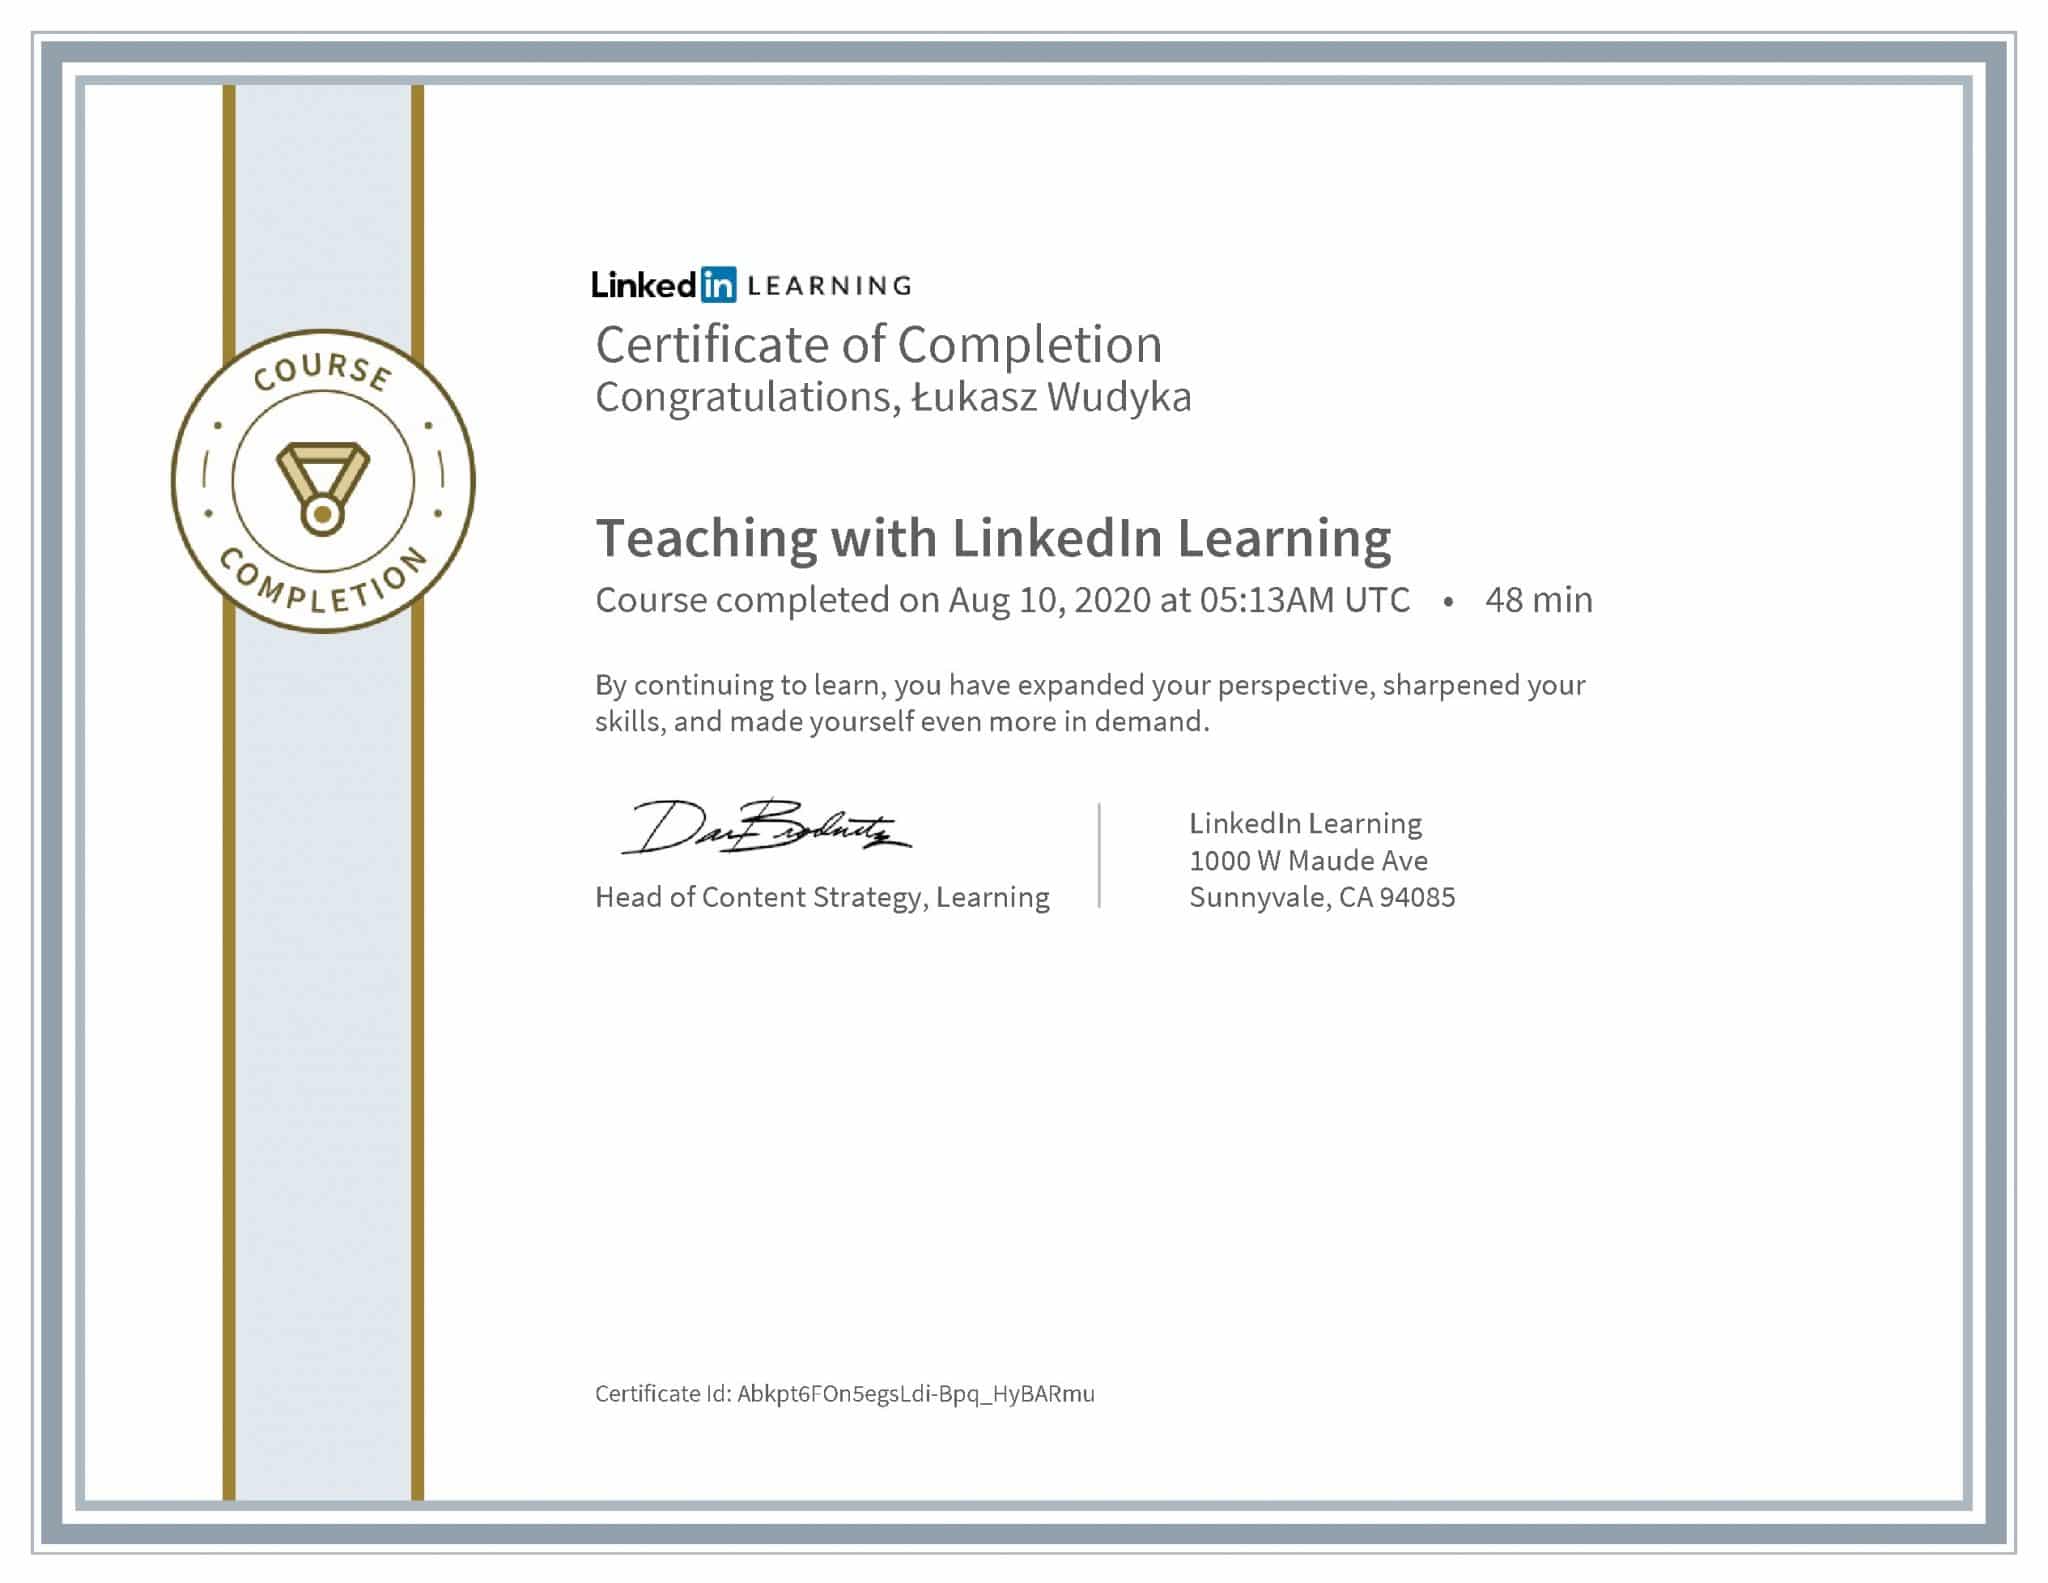 Łukasz Wudyka certyfikat LinkedIn Teaching with LinkedIn Learning